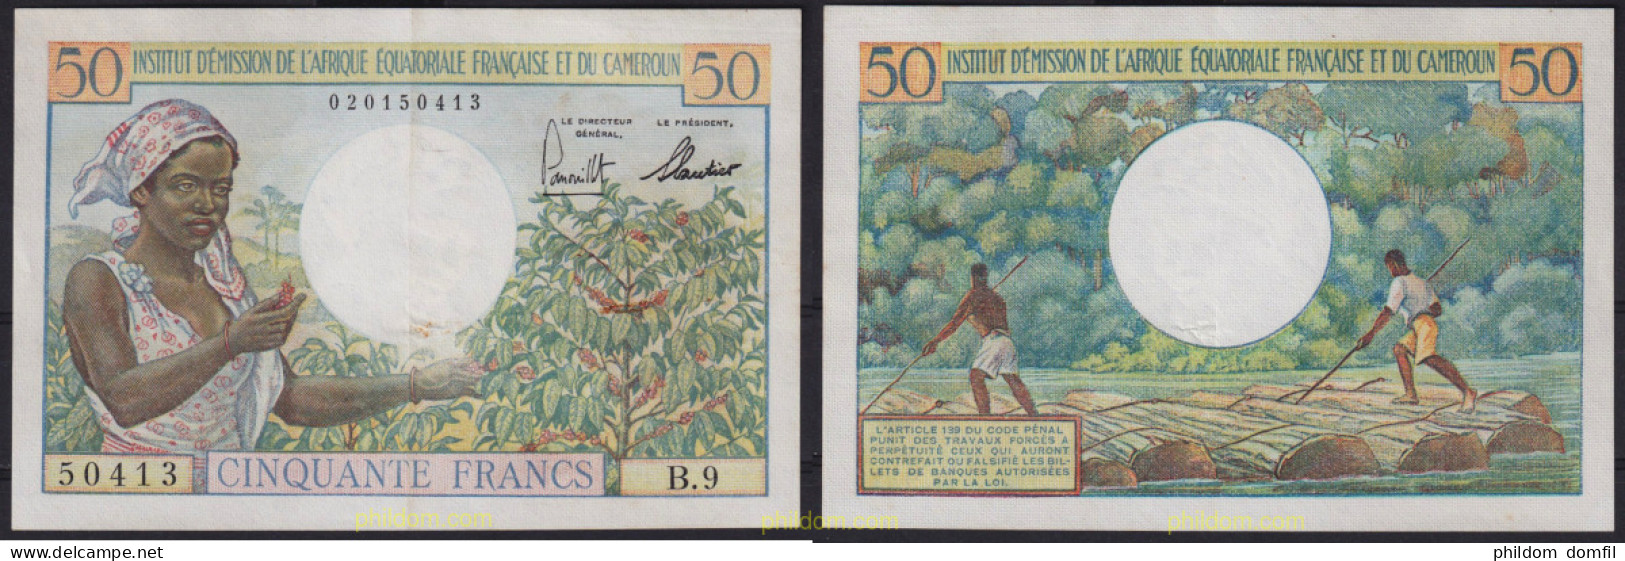 6401 CAMERUN 1957 CAMERUN 1957 50 FRANCS - Cameroun